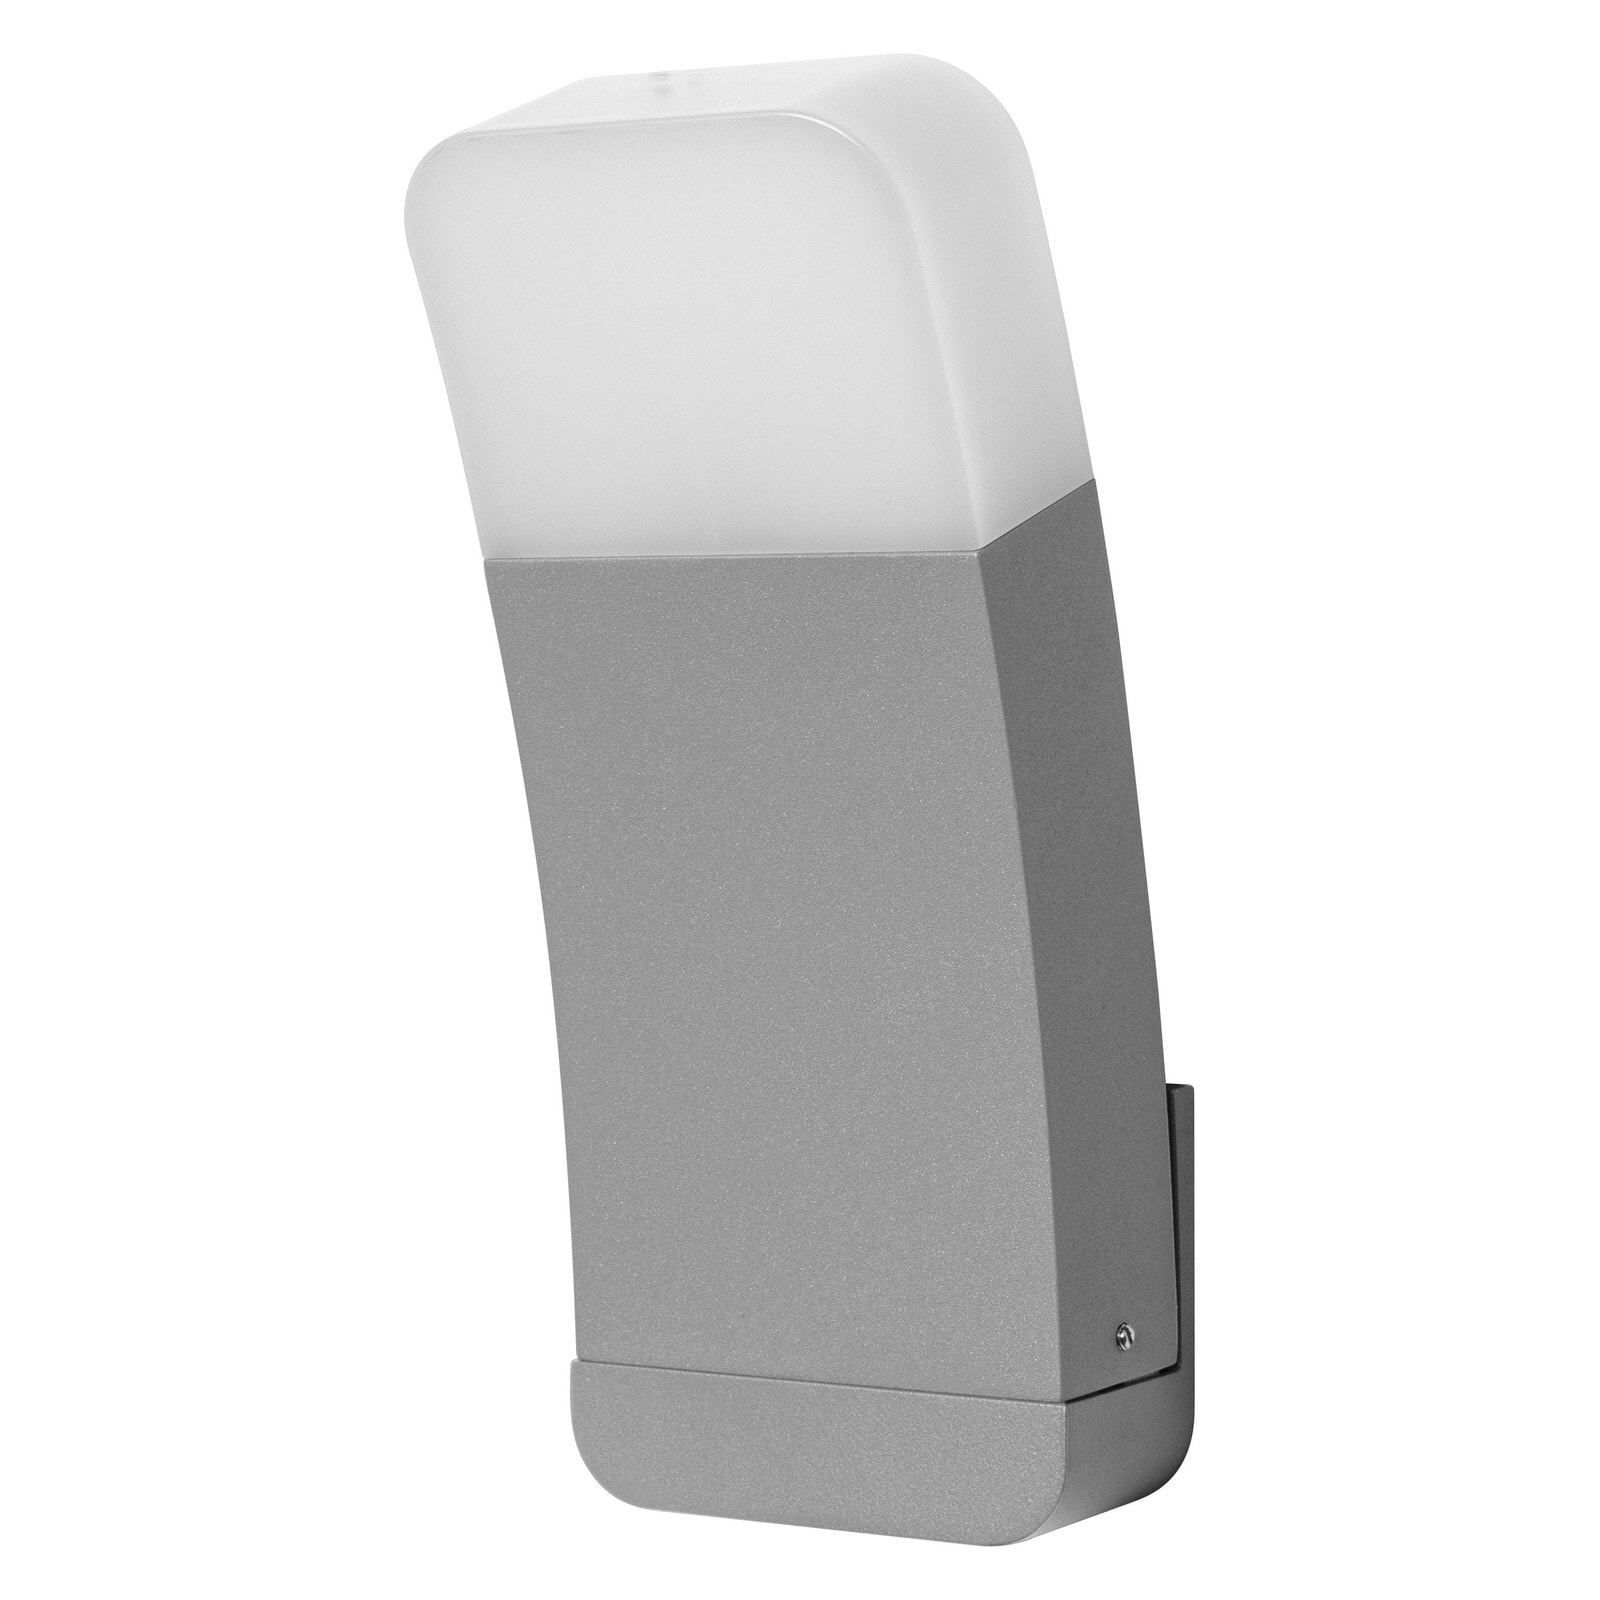 478350 - Smart wall light - Grey - Wi-Fi - 3000 K - 550 lm - 260°